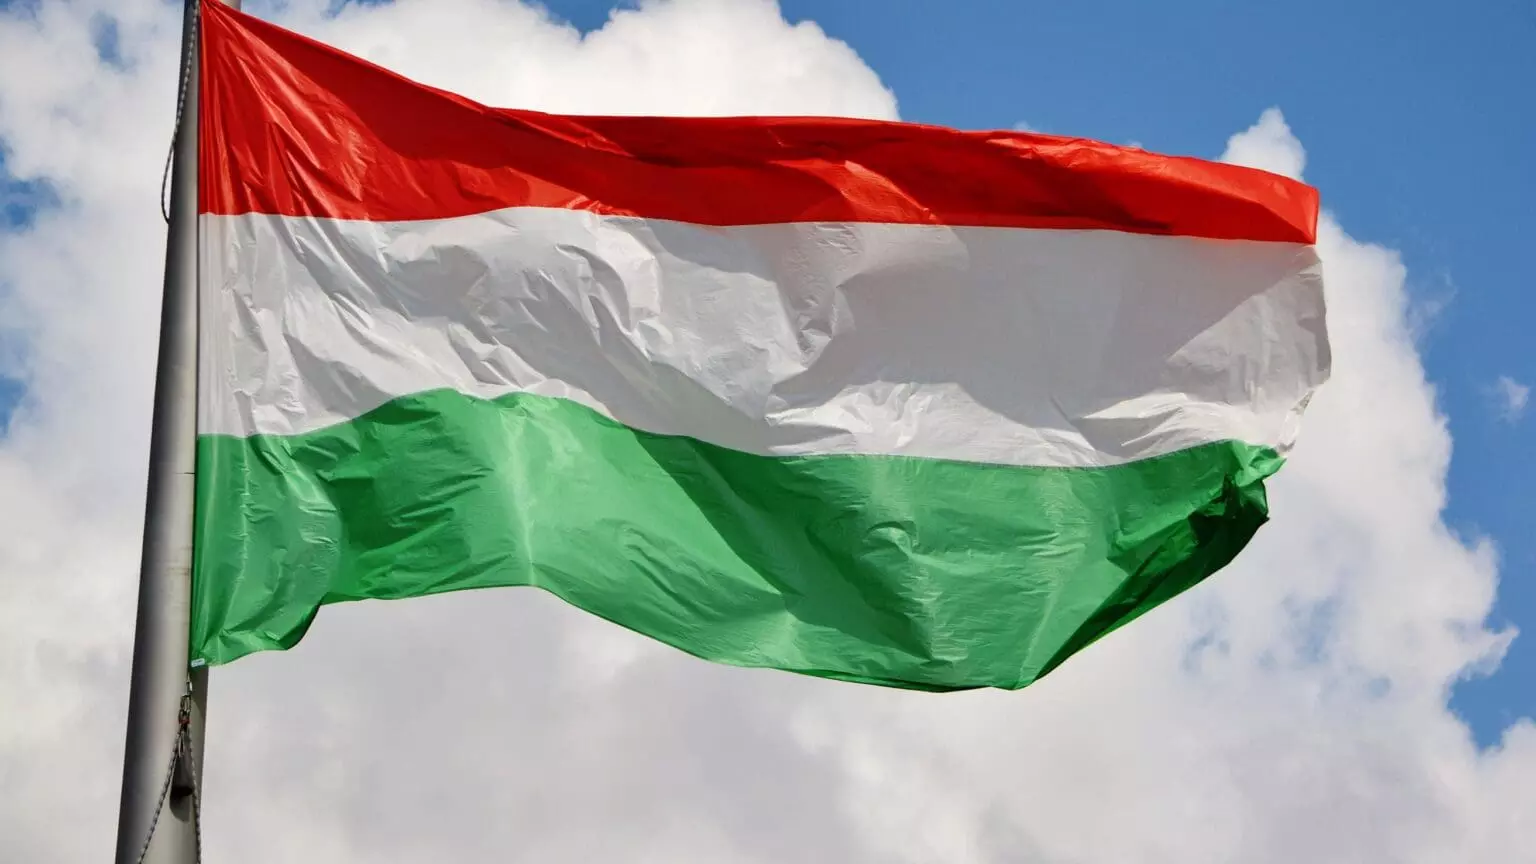 Magyarország feltételei szerepelnek az Ukrajnai EU csatlakozási dokumentumokban